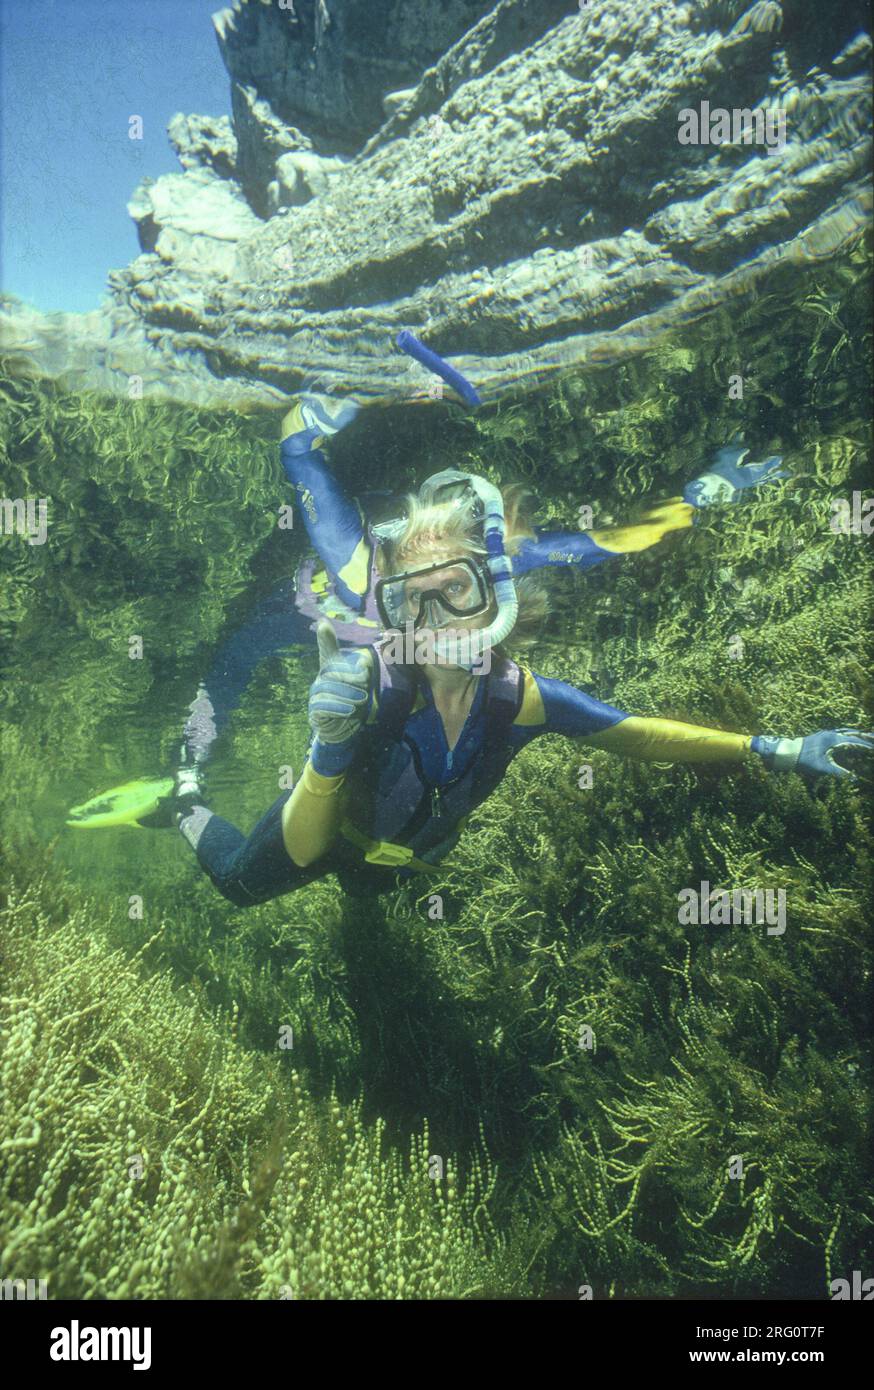 Una donna che fa snorkeling esplorando la profonda piscina di roccia fiancheggiata da alghe. Status Rock, Seal Rocks, New South Wales, Australia Foto Stock